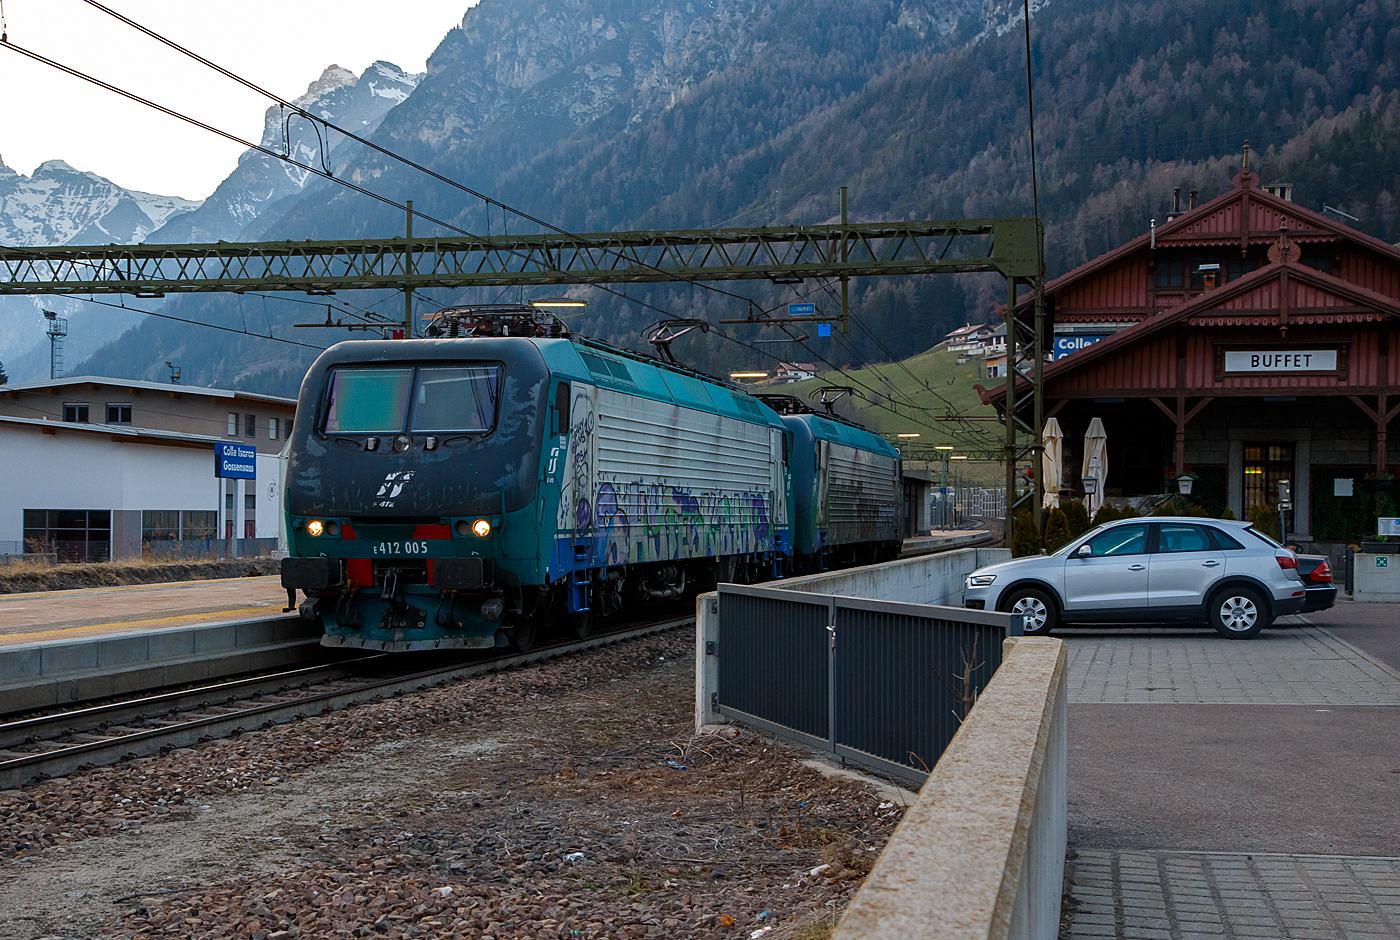 Leider sehr beschmiert....
In Doppeltraktion fahren zwei Brennerloks (ex Trenitalia E.412) am 26.03.2022 als Lokzug vom Brenner hinab kommend durch den Bahnhof Gossensaß/Colle Isarco in Richtung Bozen. Nochmal einen lieben Gruß an den netten Lokführer zurück. Vorne die E412 005 (91 83 2412 005-7 I-MIR) und dahinter die E412 018 (91 83 0412 018-4 I-MIR), beide gehören heute zur Mercitalia Rail Srl., die aber auch eine 100%tige Tochter der Ferrovie dello Stato Italiane (FS, deutsch Italienische Staatseisenbahnen) ist. Sie betreibt heute die Güterverkehrssparte. 

Beide wurden 1997 vom damaligen Hersteller ABB Tecnomasio in Vado Ligure (Italien), später Bombardier, heute Alstom, gebaut und an die Trenitalia S.p.A. geliefert. Die E.412 005 unter der Fabriknummer 7420 und die E.412 018 unter der Fabriknummer 7433. 

Die Brennerloks vom Typ Adtranz 112E sind ähnlich denen später von Bombardier (2001/2) gebauten 8 Loks für die polnische PKP - Polskie Koleje Państwowe vorgesehen EU43 vom Typ Bombardier 112E. Der Verkauf scheitere aus finanziellen Gründen seitens der PKP. Die 8 polnischen Loks sind danach an die italienische Privatbahngesellschaft RTC (Rail Traction Company) verkauft worden, die polnische Bezeichnung EU43 wurde später an Lokomotiven der TRAXX-Variante MS2 vergeben.

Ursprünglich war für beide Baureihen die Zulassung für Österreich und Deutschland vorgesehen. Die ÖBB hatte zunächst die Zulassung verweigert und erst 2006 erteilt.

Geschichte:
Im Jahr 1993 gaben die FS im Zuge der wachsenden internationalen Aktivitäten der europäischen Bahngesellschaften Mehrsystemlokomotiven in Auftrag, die sowohl im italienischen 3-kV-Gleichstromnetz als auch im Süden von Frankreich (1,5 kV =) und insbesondere für den Brennerverkehr auch im österreichischen und deutschen Netz (15 kV, 16,7 Hz) einsetzbar sein sollte. Die Lokomotiven sollten sowohl für schnelle EuroCity-Züge als auch für den Güterverkehr einsetzbar sein. Die vier Prototyp-Lokomotiven wurden ab 1996 vom damaligen Hersteller ABB Tecnomasio (heute Alstom) in Vado Ligure, Italien, gebaut. Dieses Werk produziert nahezu ausschließlich für den italienischen Markt. 

Technik:
Die Lokomotiven laufen auf Drehgestellen mit Integriertem Gesamtantrieb (IGA), der auch bei den Lokomotiven der DB-Baureihe 101 und den italienischen E405 vorhanden ist, die Stromrichter ähneln denen der SBB Re 460. Für den Antrieb werden Doppelsternmotoren verwendet, was Drehstrom-Asynchronmotoren mit zwei Wicklungssystemen in Sternschaltung im selben Gehäuse sind – eine eher unübliche Schaltung.

Der geschweißte Wagenkasten in Stahlleichtbaukonstruktion stützt sich über Flexicoil-Schraubenfedern auf die Drehgestelle ab. Die Seitenwände aus Aluminium sind zur Erhöhung der Steifigkeit gesickt. Der estergekühlte Transformator ist wie bei Neubaulokomotiven üblich unterflur angeordnet. Die Lokomotive ist mit Gruppenantrieb ausgeführt, wobei eine Antriebsgruppe aus einer Achse aus dem Drehgestell 1 und einer aus dem Drehgestell 2 besteht, eine ebenfalls unübliche Anordnung.

Die Lokomotiven verfügt über eine elektrische Nutzbremse. Es sind zwei Einholmstromabnehmer der Bauart WBL 85 vorhanden, je einer für Gleichspannung (Führerstand A, italienische Palette) und Wechselspannung (Führerstand B, deutsch-österreichische Palette).

In der Lokomotive sind zwei Stromrichter angeordnet. Unter Wechselstromsystemen wird die sekundärseitige Spannung des Haupttransformators in einem Vierquadrantensteller (4QS) in eine Gleichspannung umgewandelt, welche in einen Gleichstromzwischenkreis eingespeist wird. Unter den Gleichstromsystemen erfolgt die Speisung des Zwischenkreises direkt aus der Fahrleitung.

Die Pulswechselrichter wandeln den Gleichstrom des Zwischenkreises in Dreiphasenwechselstrom zur Speisung der Fahrmotoren um. Im Gleichstromnetz sind zwei Pulswechselrichter in Serie geschaltet, die je ein Wicklungssystem der Fahrmotoren mit Strom versorgen, im Wechselstromsystem wird nur ein Pulswechselrichter benötigt, der die beiden parallel geschalteten Wicklungssysteme der Fahrmotoren mit Spannung versorgt.

Die Steuerung der Antriebe erfolgt durch ein rechnerunterstütztes Betriebssystem. Die Lokomotiven sind mit 18-poligen IS-Steckdosen für die UIC-Leitung, einer Vielfachsteuerung und einer Speiseeinrichtung der Zugsammelschiene für Reisezüge ausgerüstet. Lauftechnisch sind die Lokomotiven für eine Geschwindigkeit von 220 km/h ausgelegt, jedoch in Italien nur für 200 km/h zugelassen. Ausgerüstet wurden sie mit Fahrzeugeinrichtungen der Zugbeeinflussungen RS4 Codici (Italien) sowie punkt- und linienförmiger Zugbeeinflussung (Österreich und Deutschland). Von einem Einsatz in Frankreich wurde abgesehen.

Die E 412 wurden mit dem damals üblichen XMPR-Anstrich der FS ausgeliefert, werden seit 2021 aber im Rahmen von Hauptuntersuchungen auf den neuen rot-grauen Anstrich der FS-Tochter Mercitalia Rail umlackiert.

TECHNISCHE DATEN:
Spurweite:  1.435 mm (Normalspur)
Achsformel: Bo'Bo'
Länge: 19.400 mm
Drehzapfenabstand: 11.400mm
Achsabstand im Drehgestell: 2.650 mm
Dienstgewicht: 88 t
Höchstgeschwindigkeit: 150 km/h Italien / 140 km/h Deutschland / 120 km/h Österreich
Dauerleistung: 5.600 kW (15 kV AC) / 5.400 kW (3 kV DC) / 2.700 kW (1,5 kV DC)
Anfahrzugkraft: 280 kN
Stromsysteme: 15 kV, 16,7 Hz AC, 3.000 V DC und 1.500 V DC 
Anzahl der Fahrmotoren:  4× IGA-Drehstrom-Asynchronmotoren
Bremse: Druckluftbremse, el. Nutzbremse
Zugbeeinflussung: RS 4 Codici, PZB, LZB